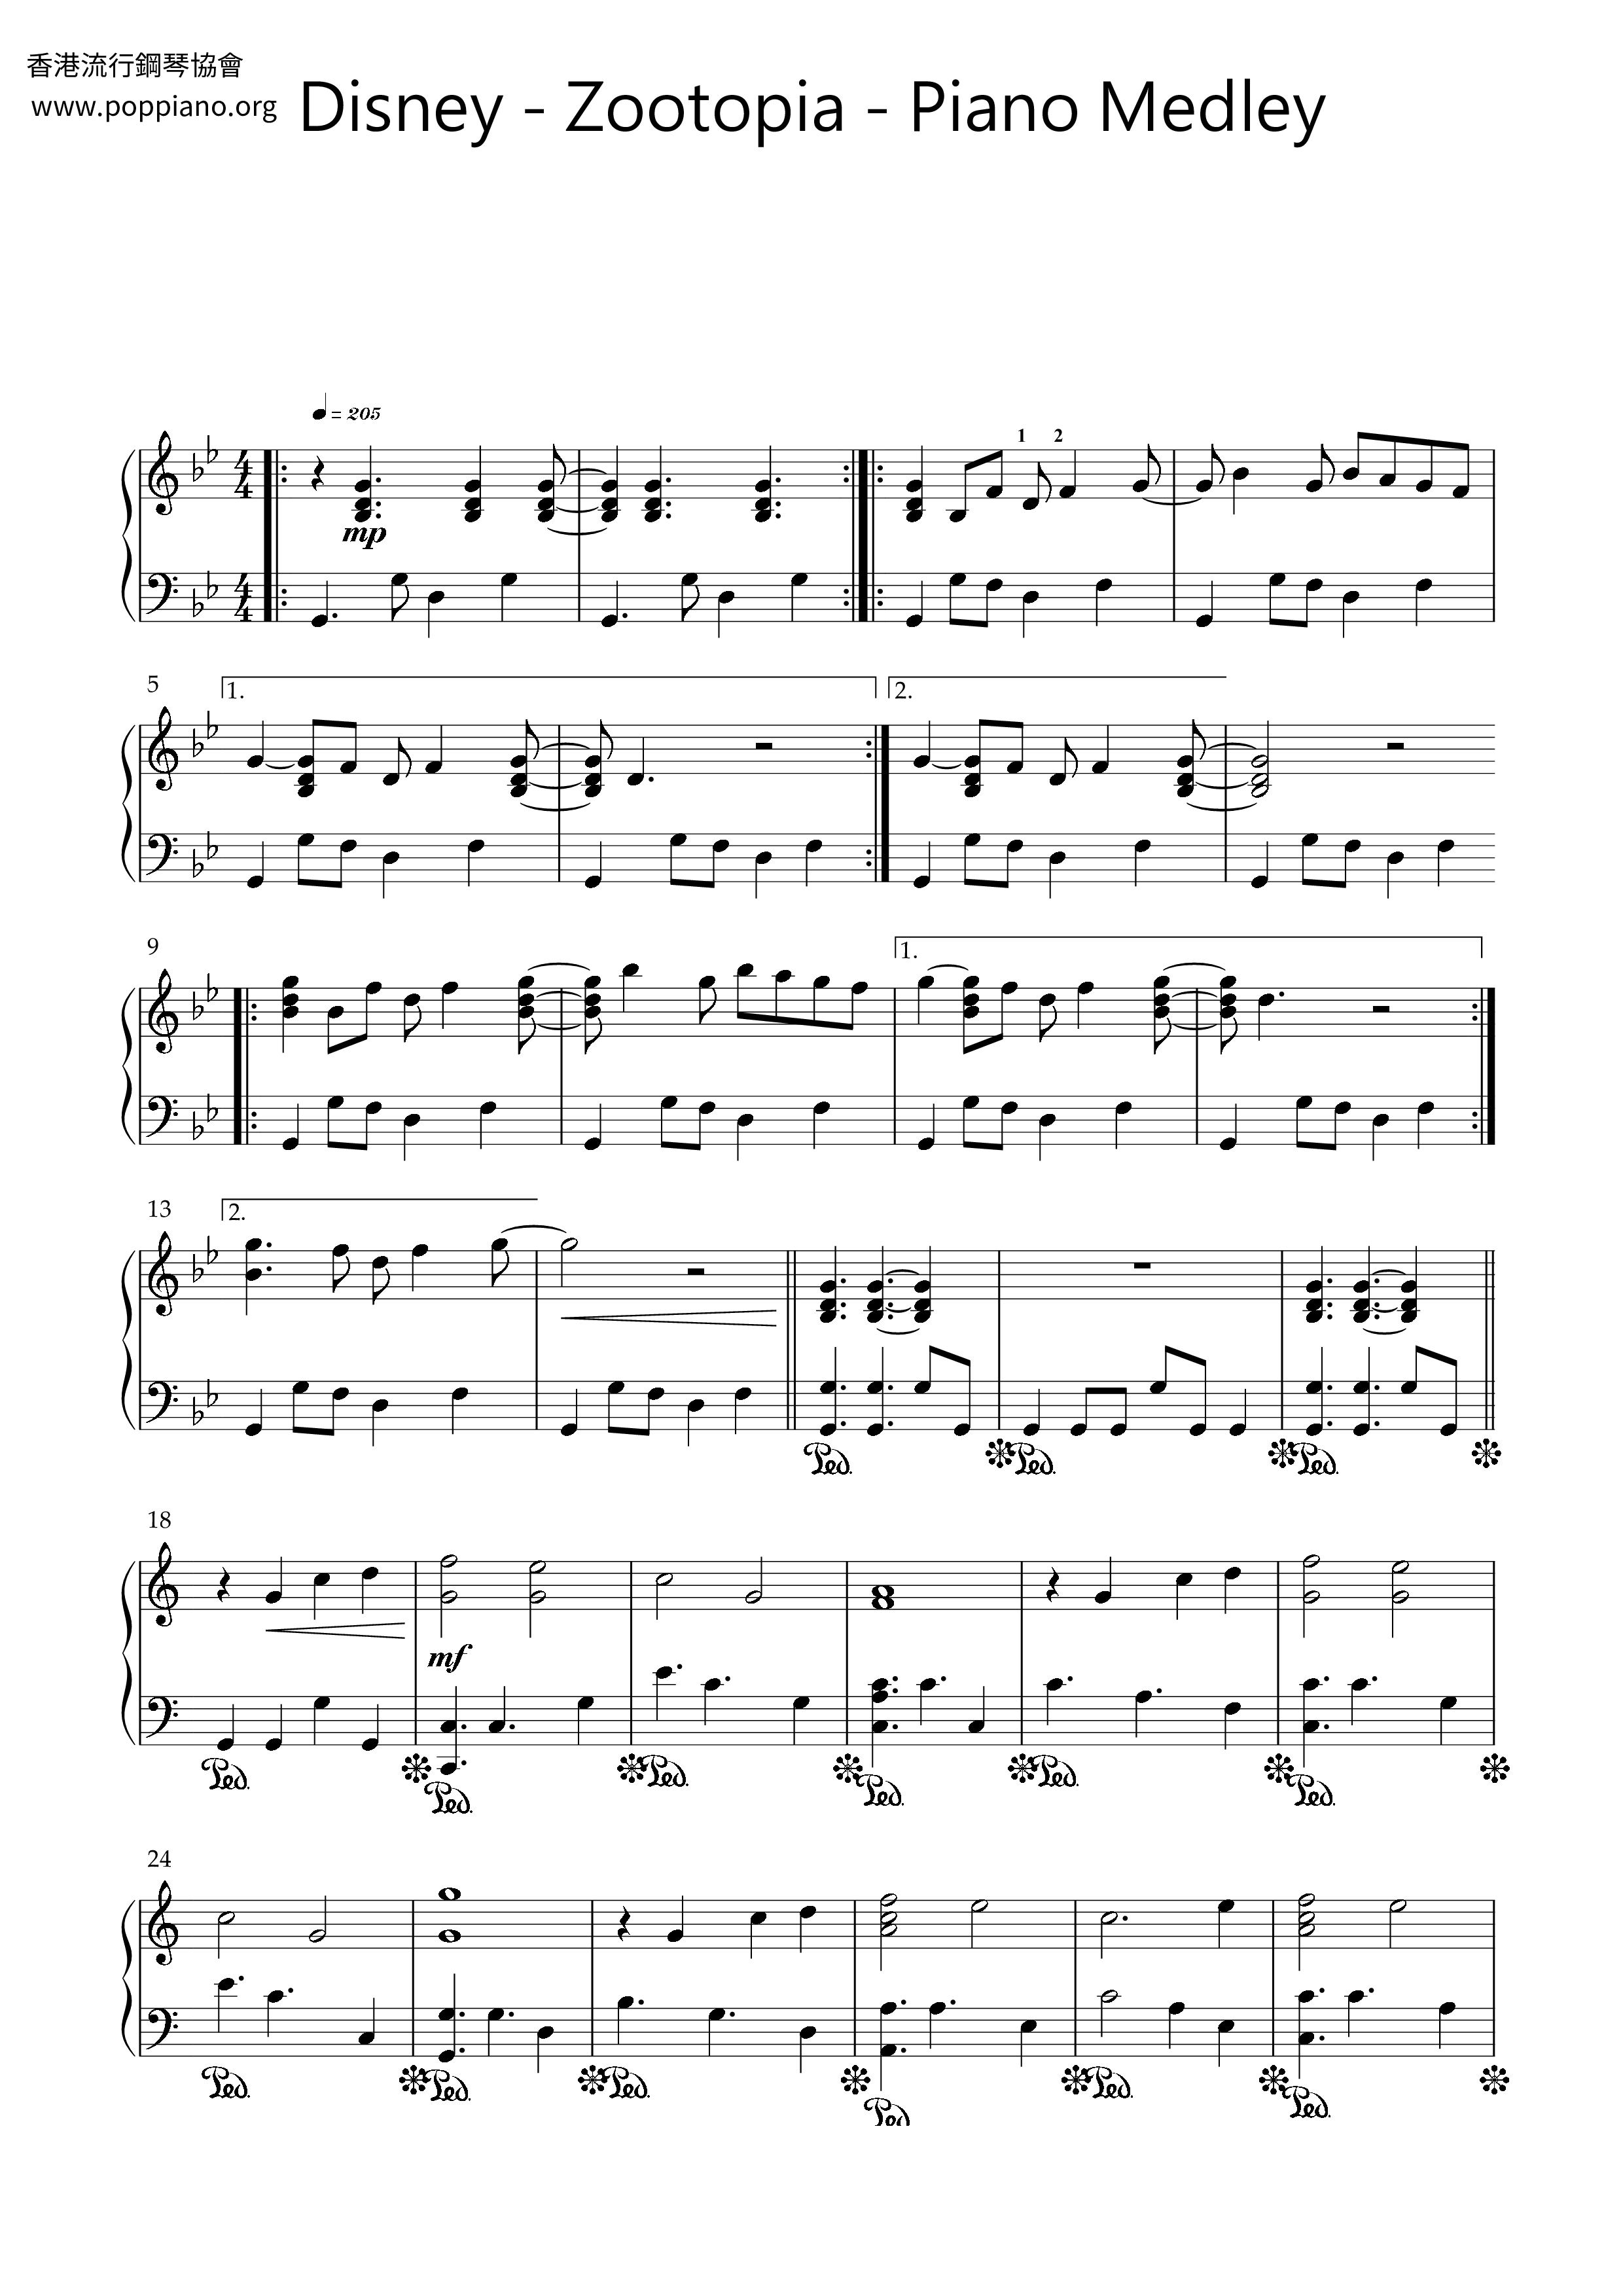 ディズニー Zootopia Piano Medley ピアノ譜pdf 香港ポップピアノ協会 無料pdf楽譜ダウンロード Gakufu